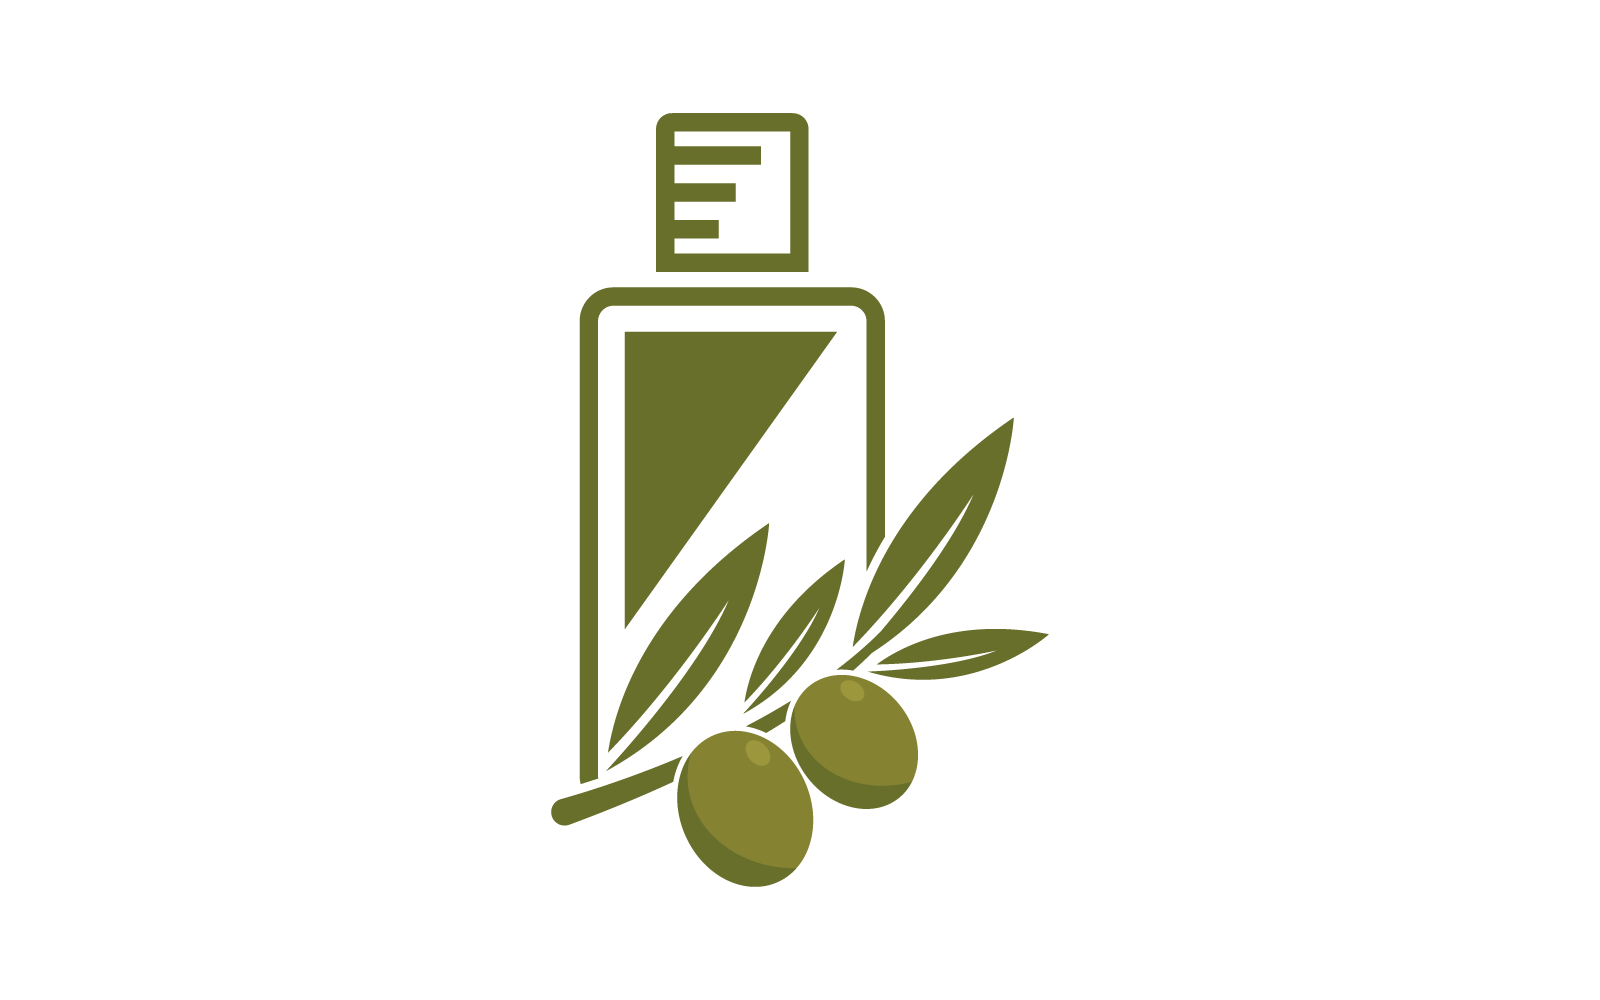 Olive illustration logo template vector flat design